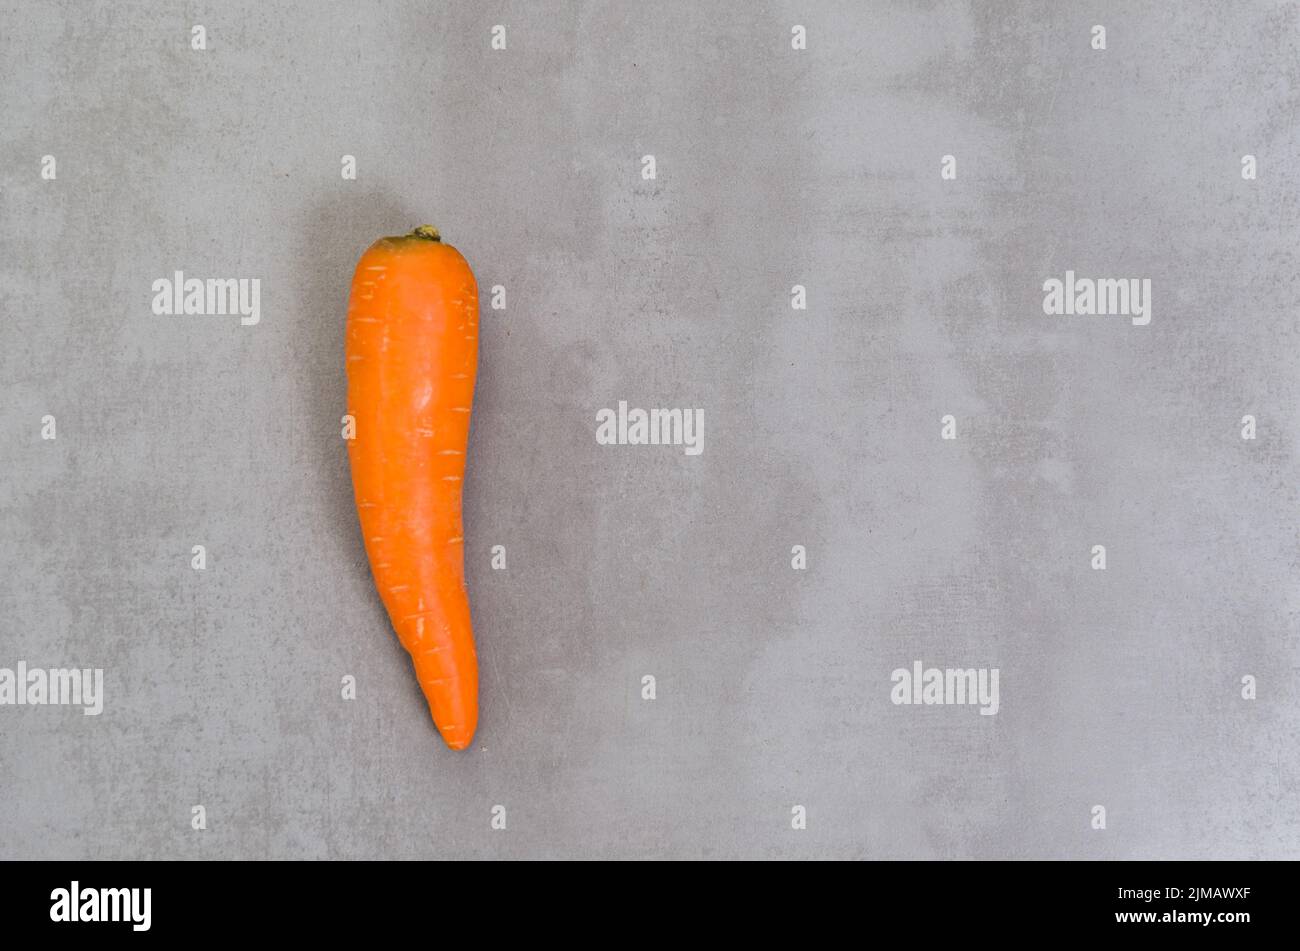 Grand concept de la saine alimentation, la carotte sur fond gris, béton poli. Banque D'Images